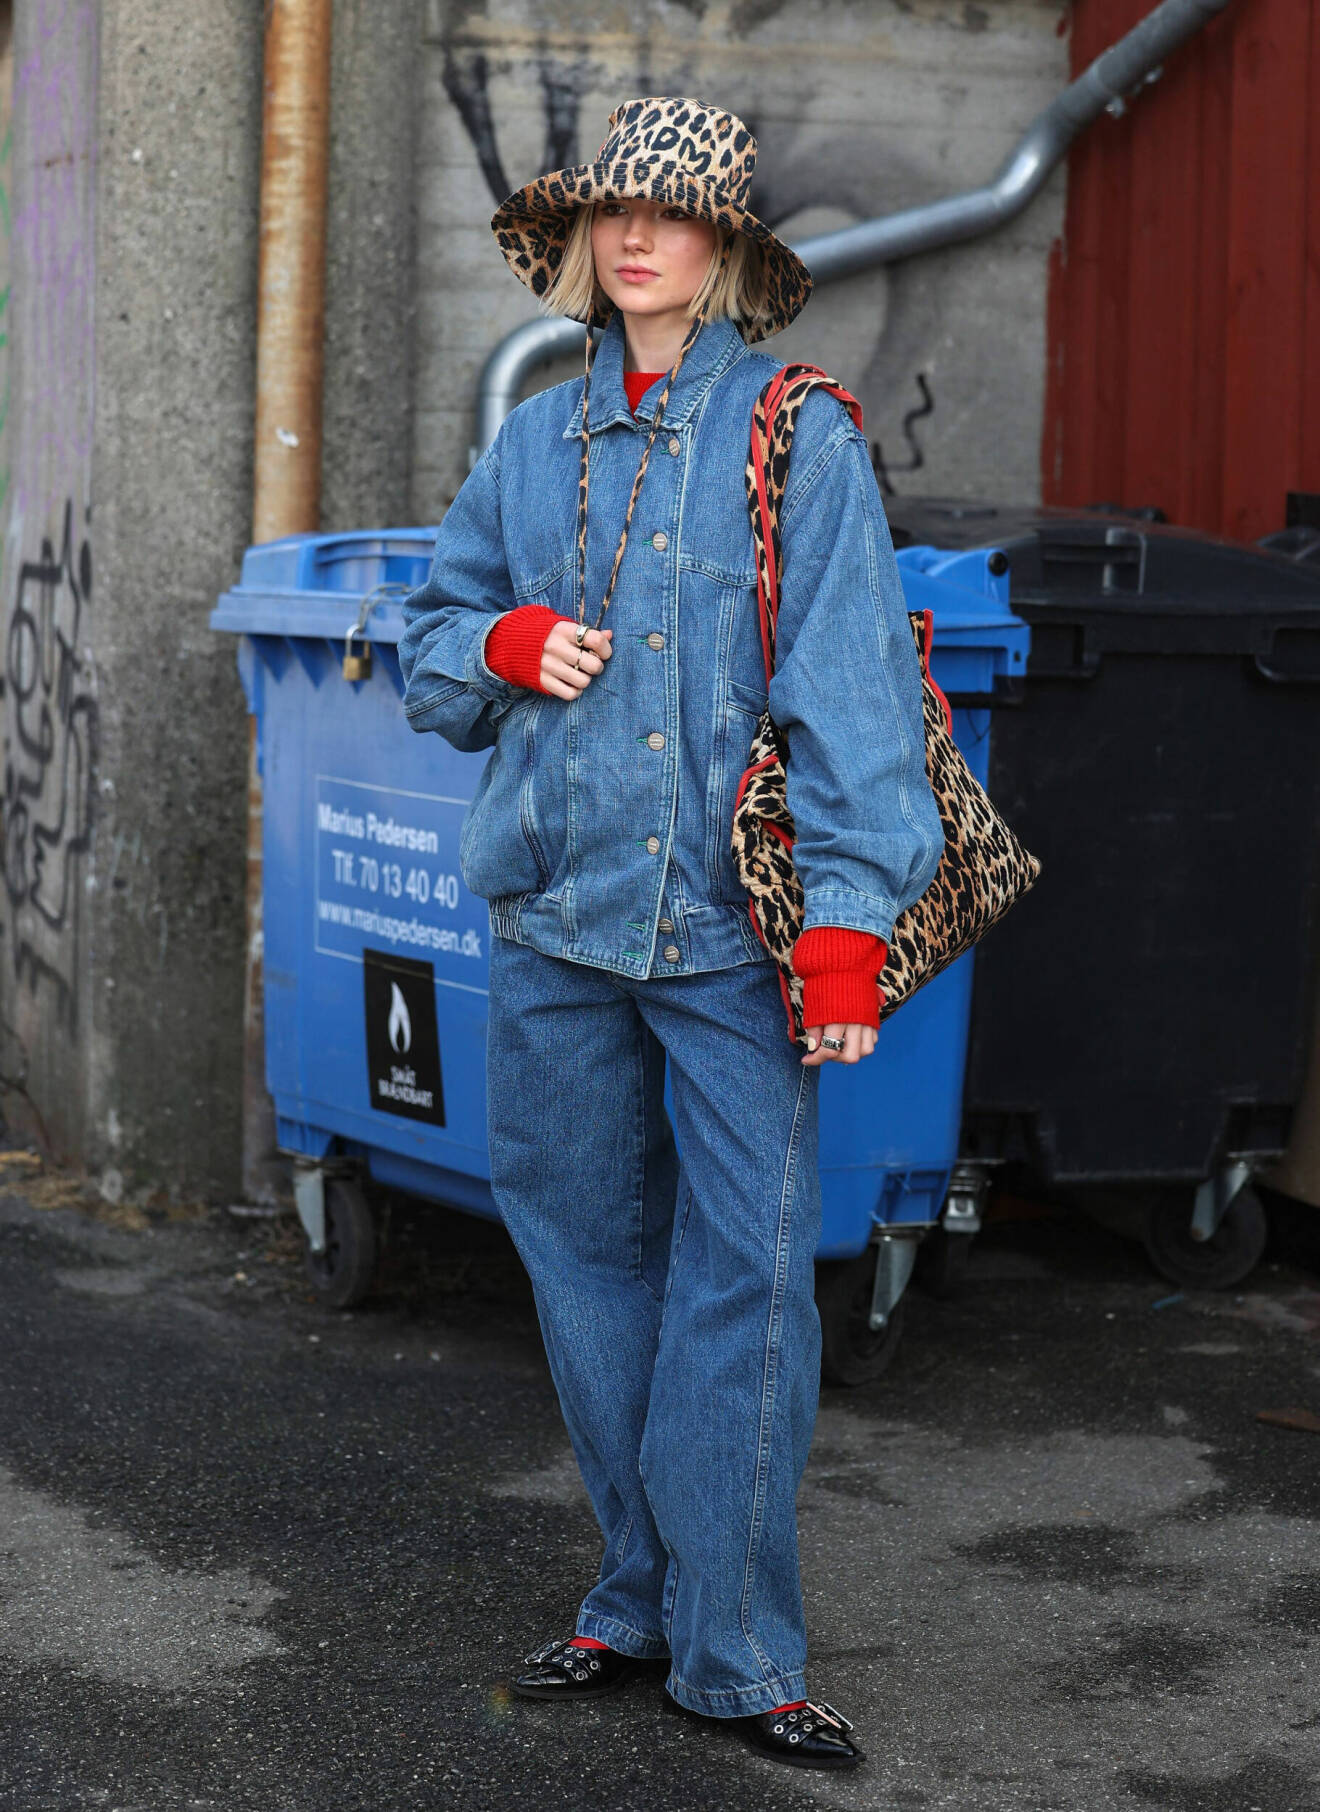 Gäst iklädd jeans och jeansjacka vid modeveckan i Köpenhamn.